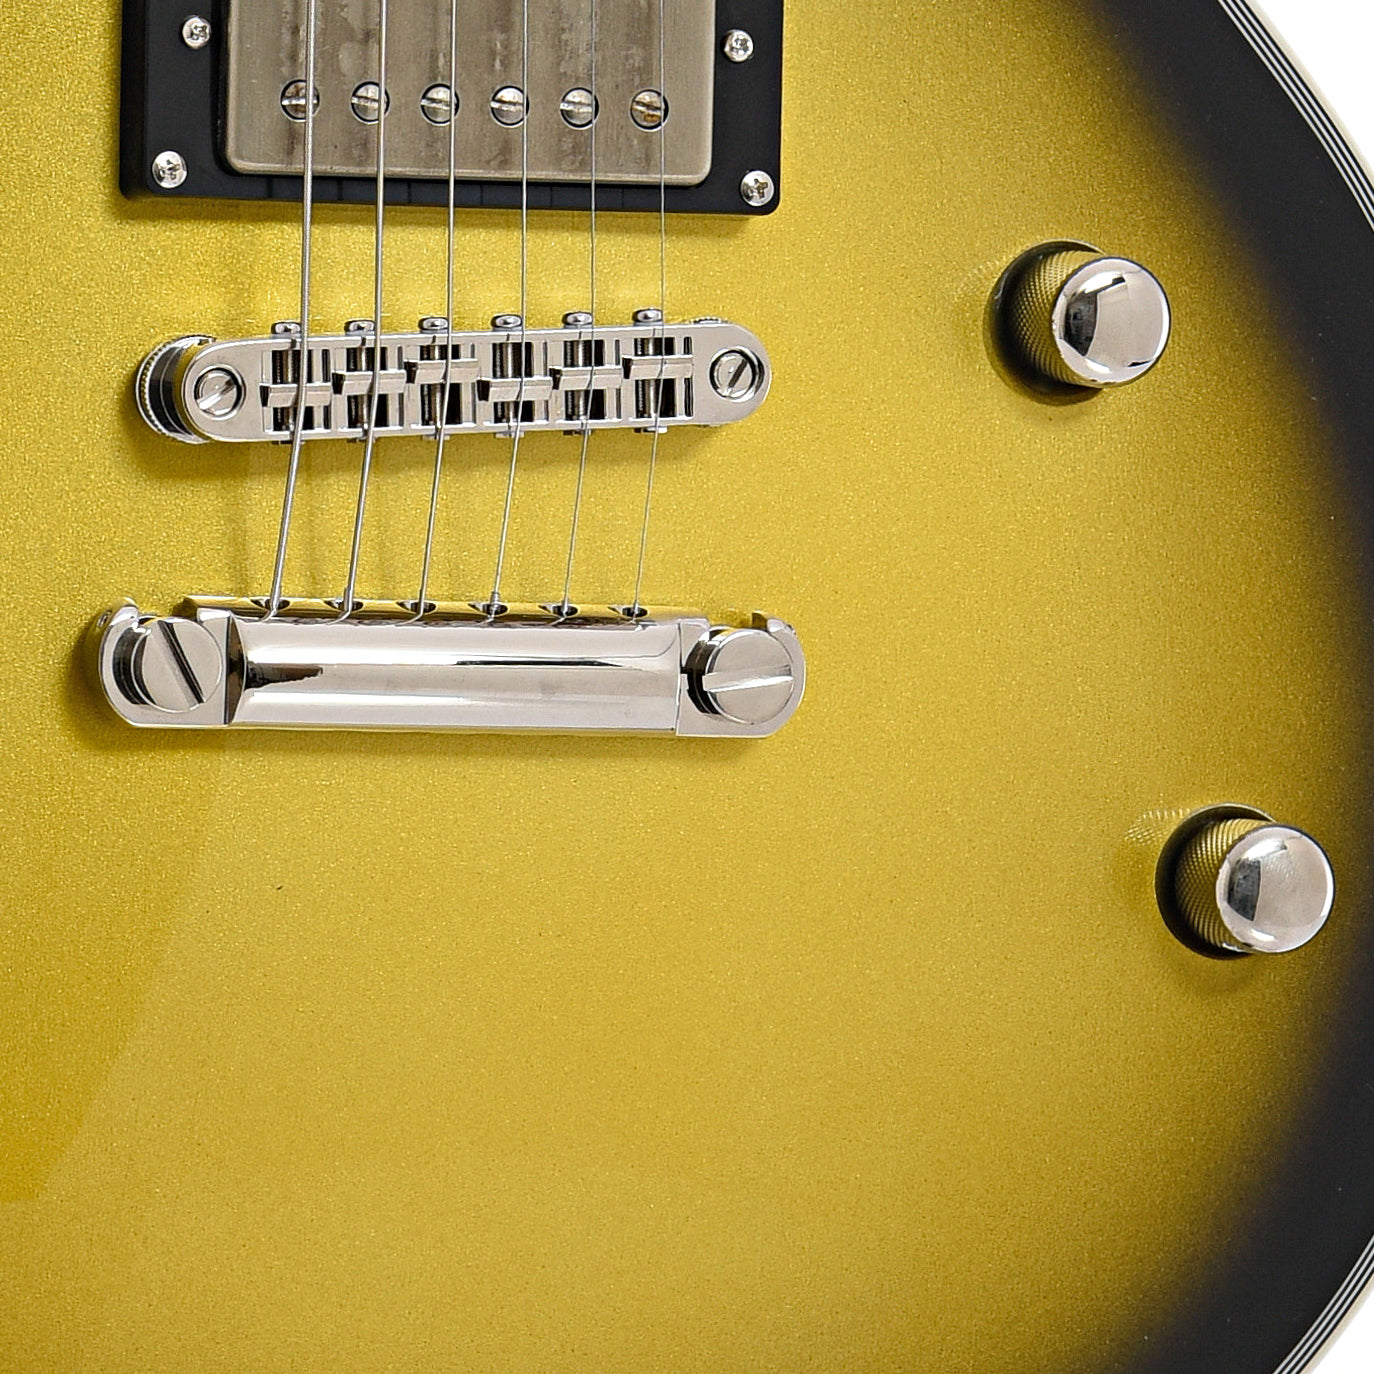 Tailpiece, bridge and controls of ESP LTD BK-600 Electric Guitar, Vintage Silver Sunburst